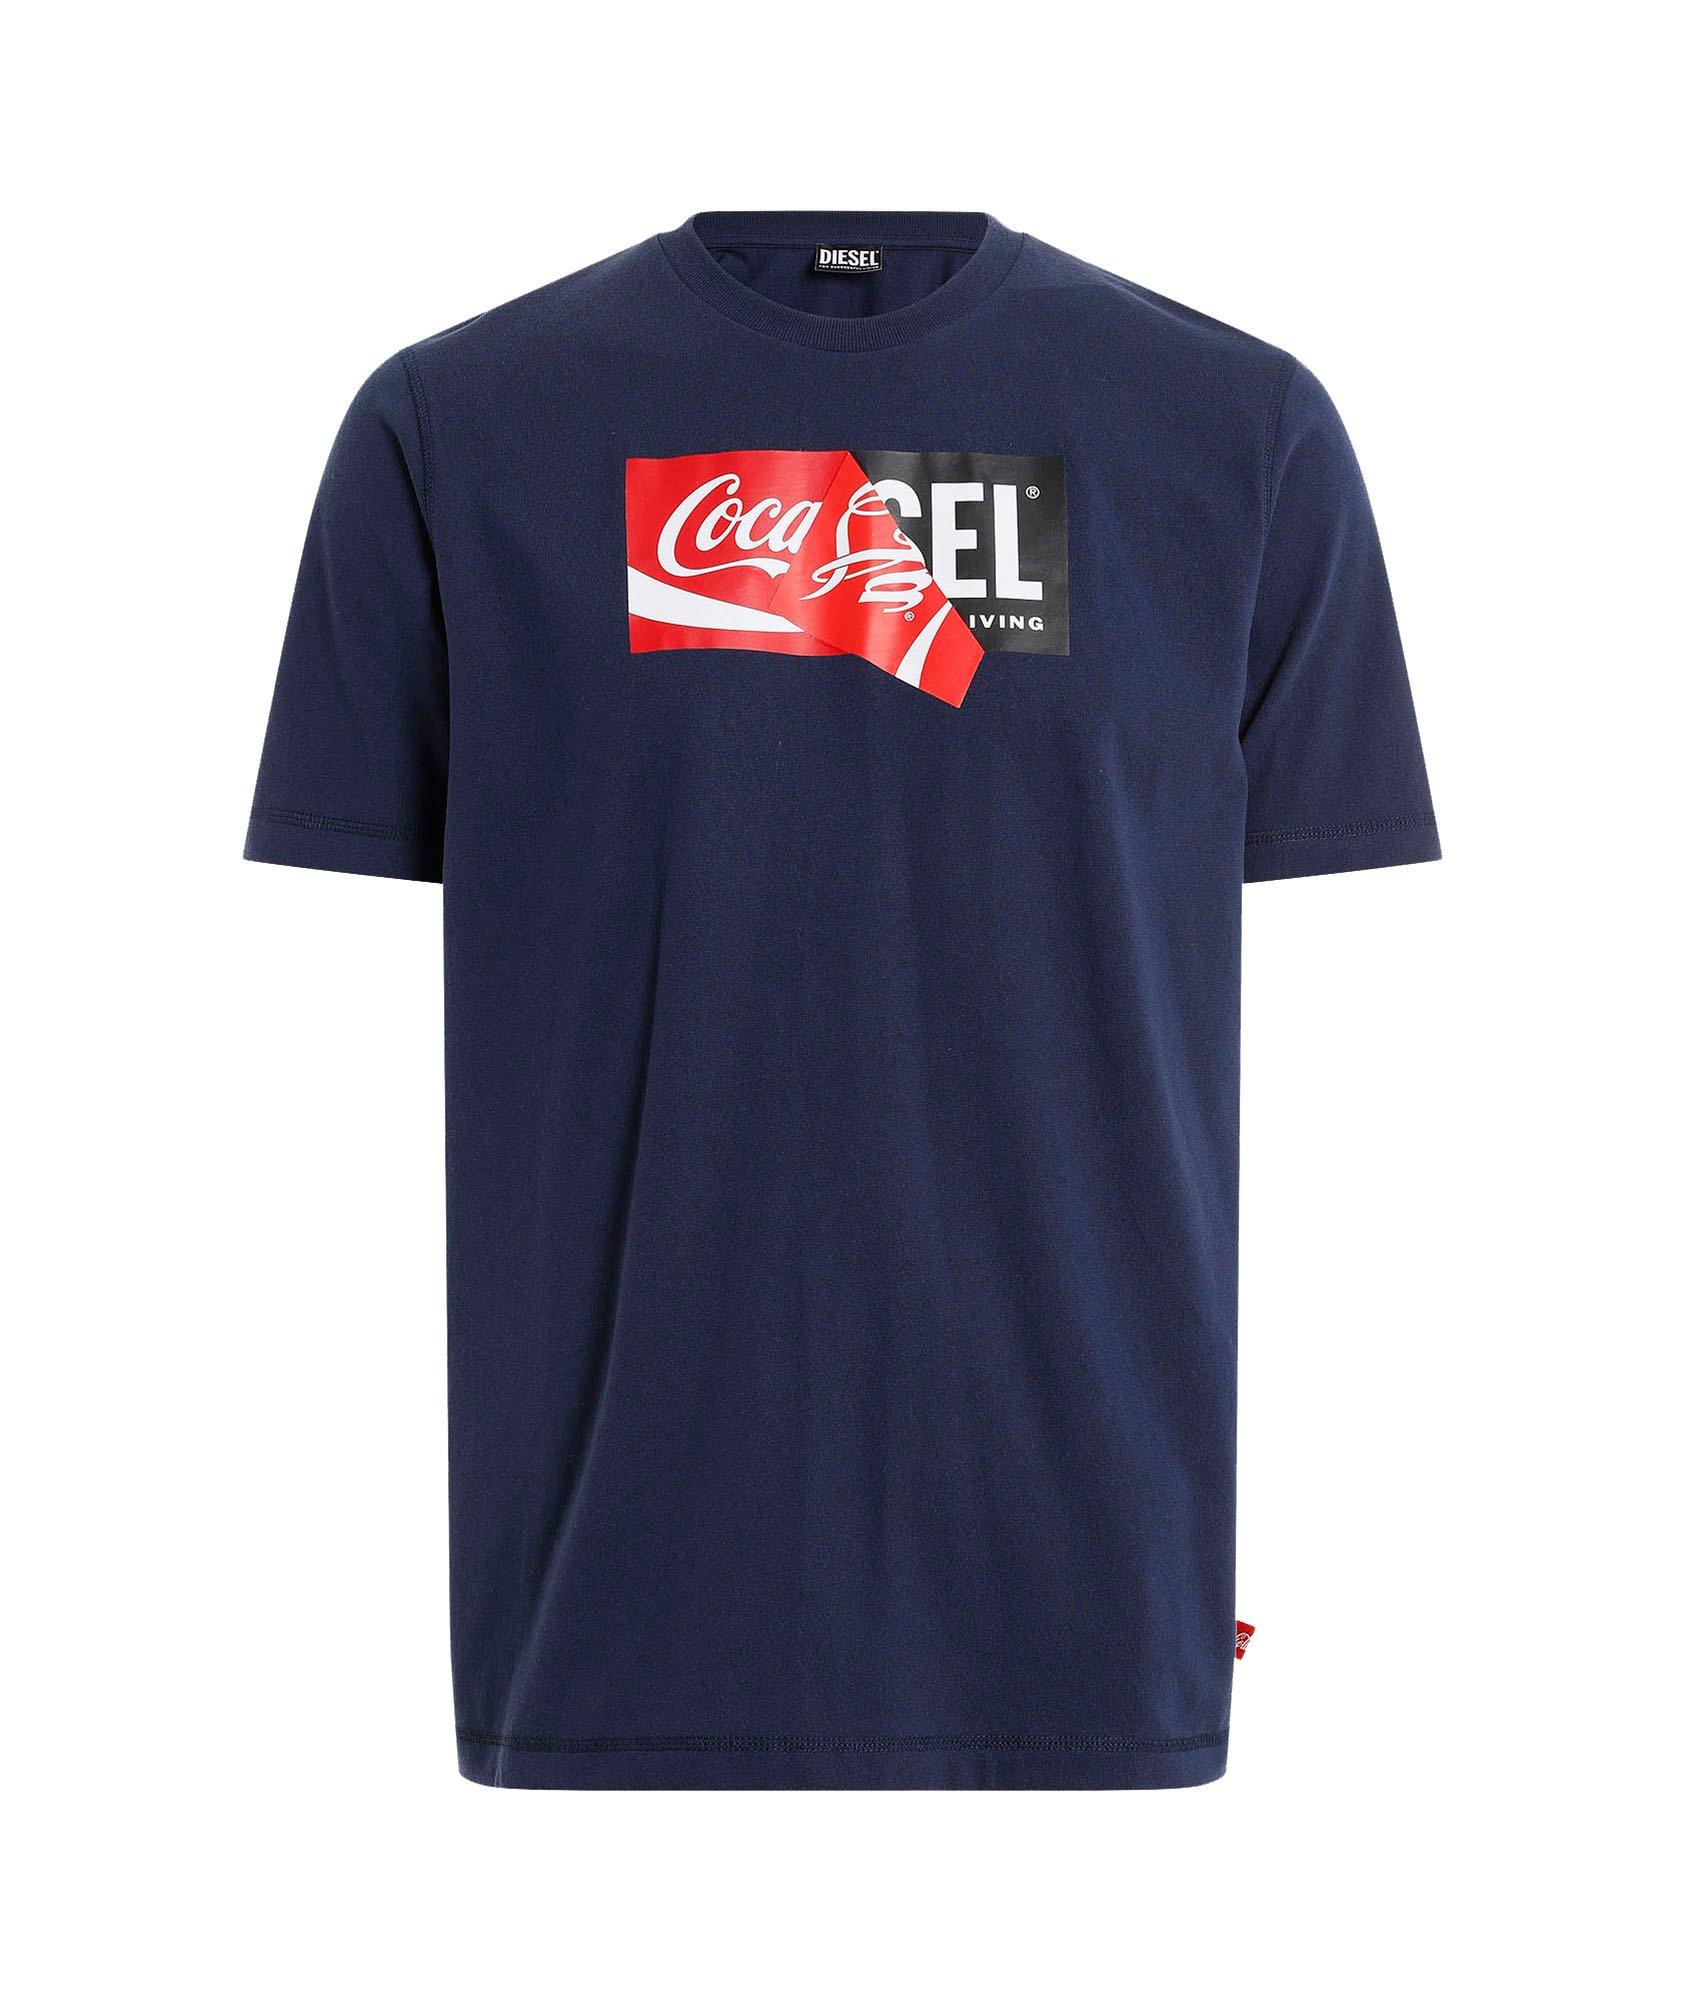 Coca-Cola Cotton-Blend T-Shirt image 0